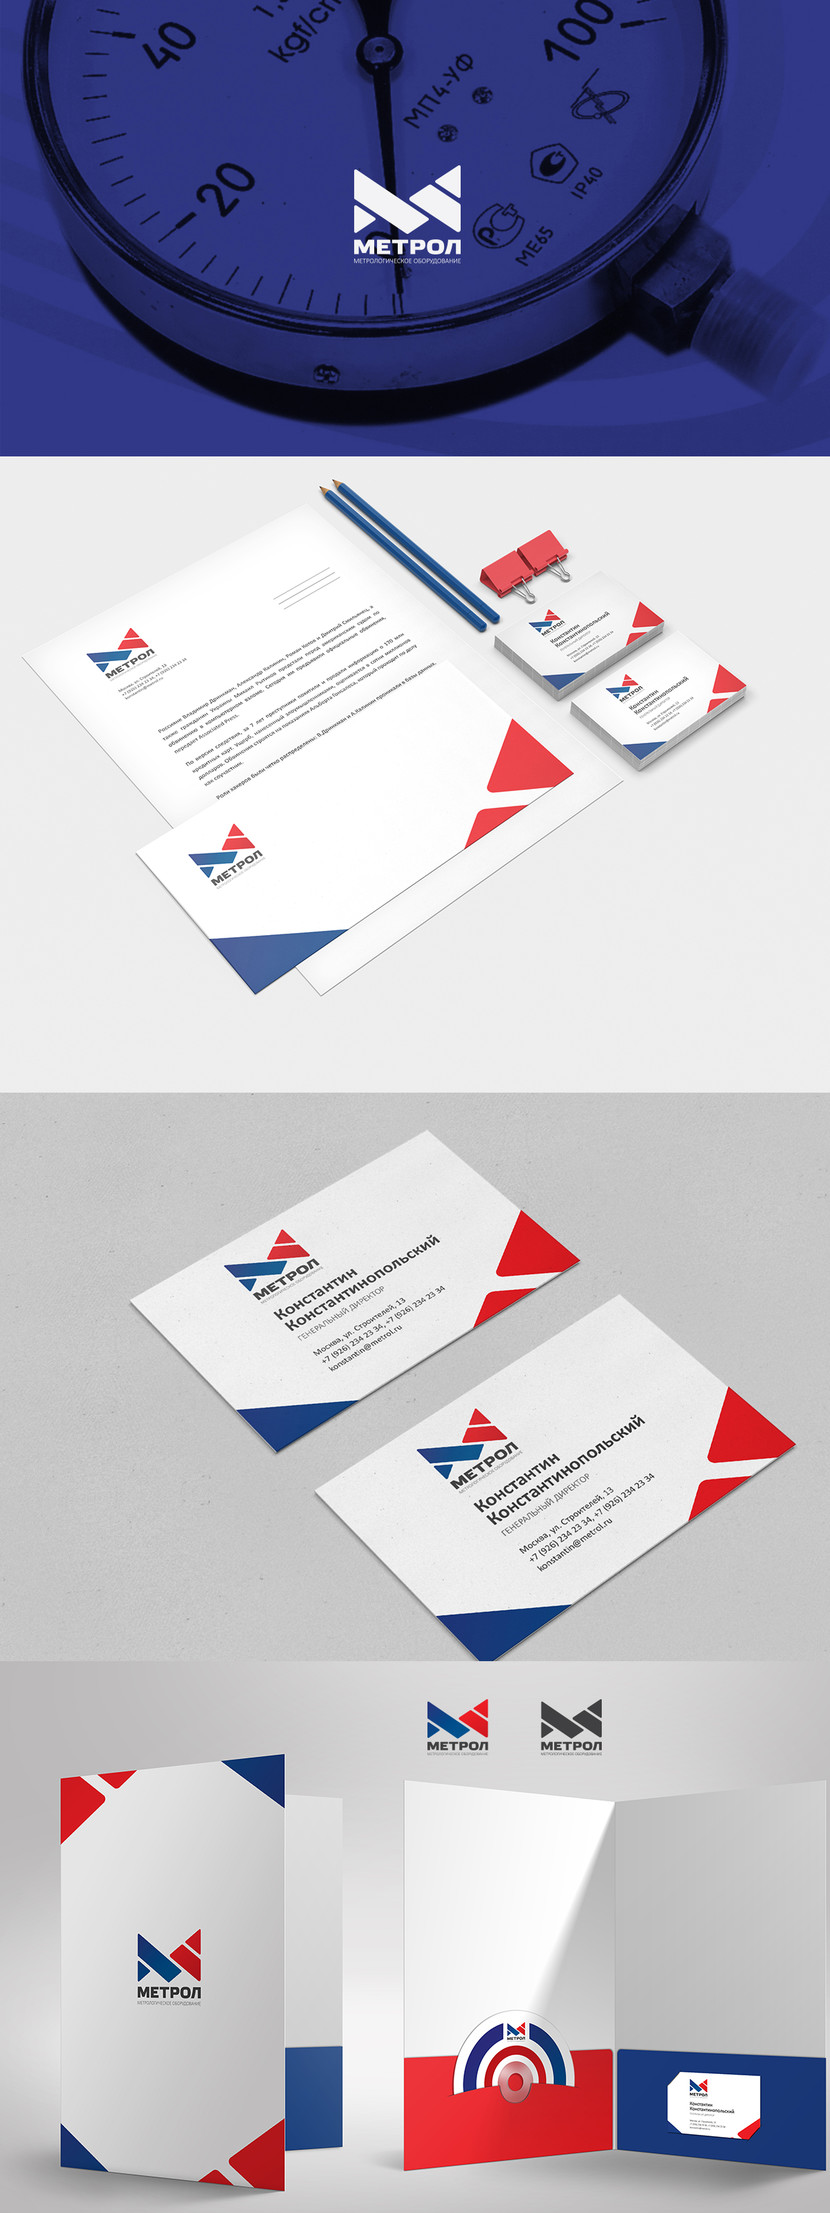 + Разработка фирменного стиля компании (логотип, визитка, бланк, конверт, диск CD/DVD)